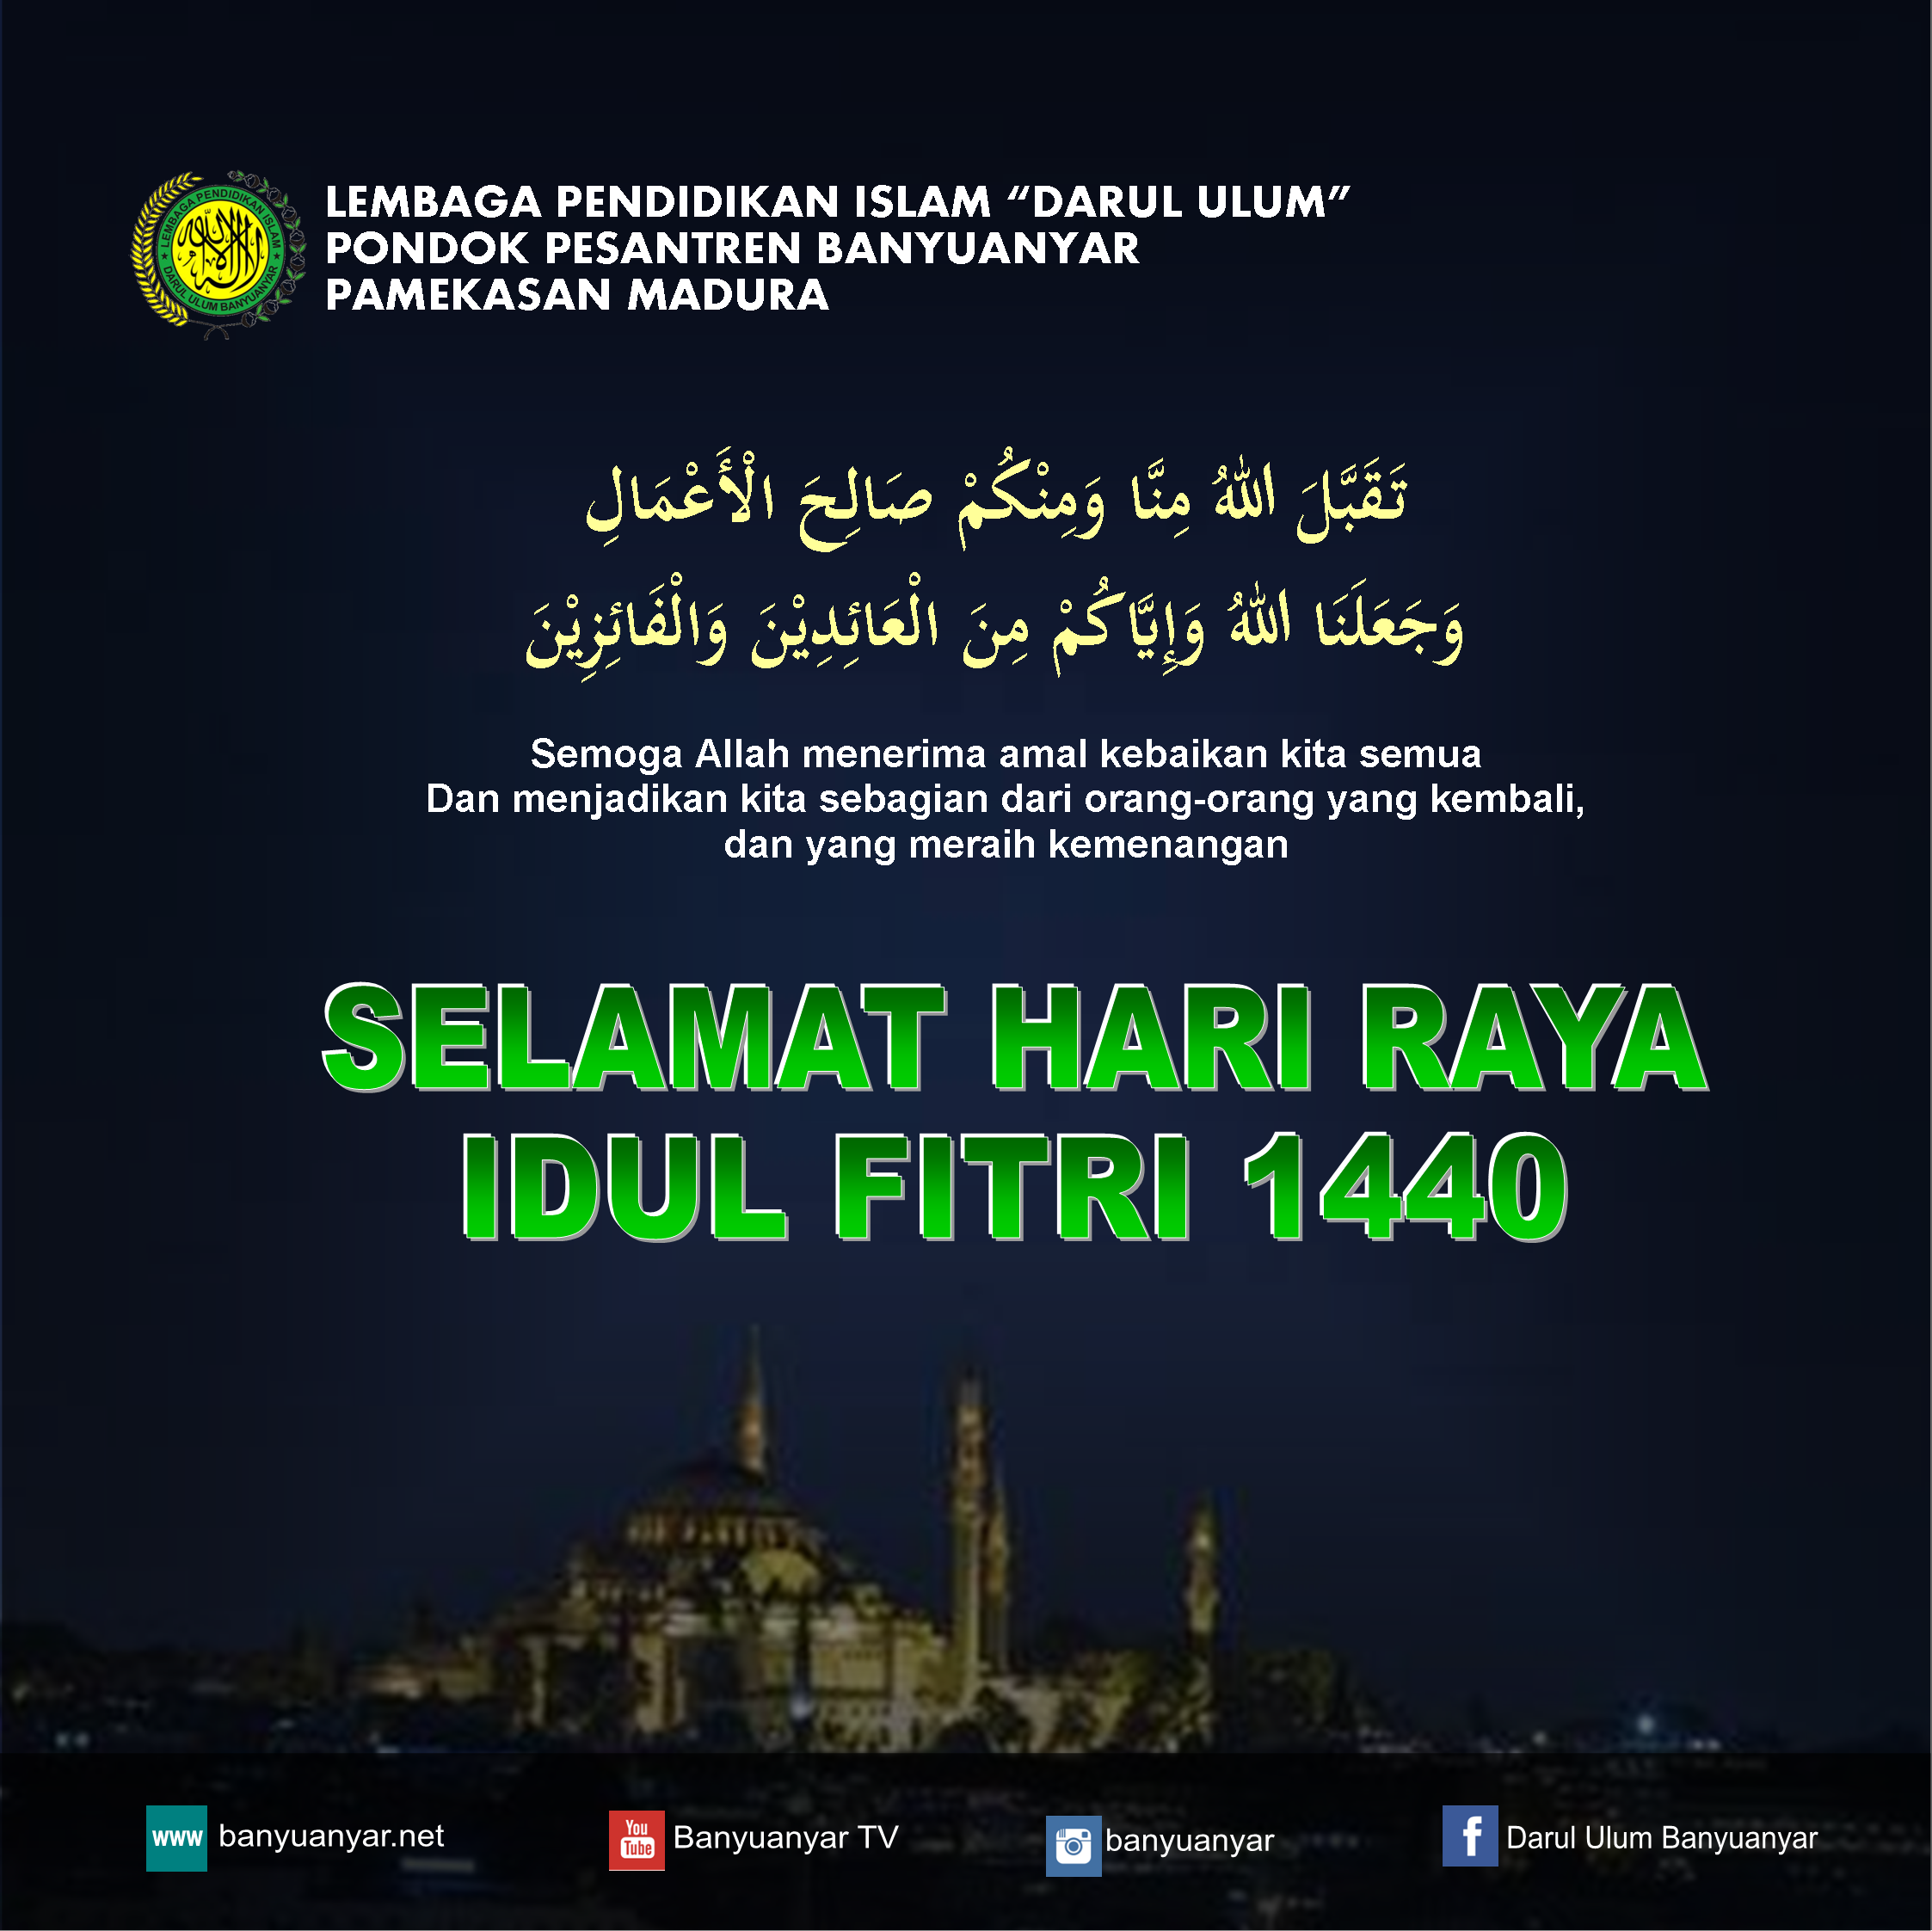 Selamat Hari Raya Idul Fitri 1440